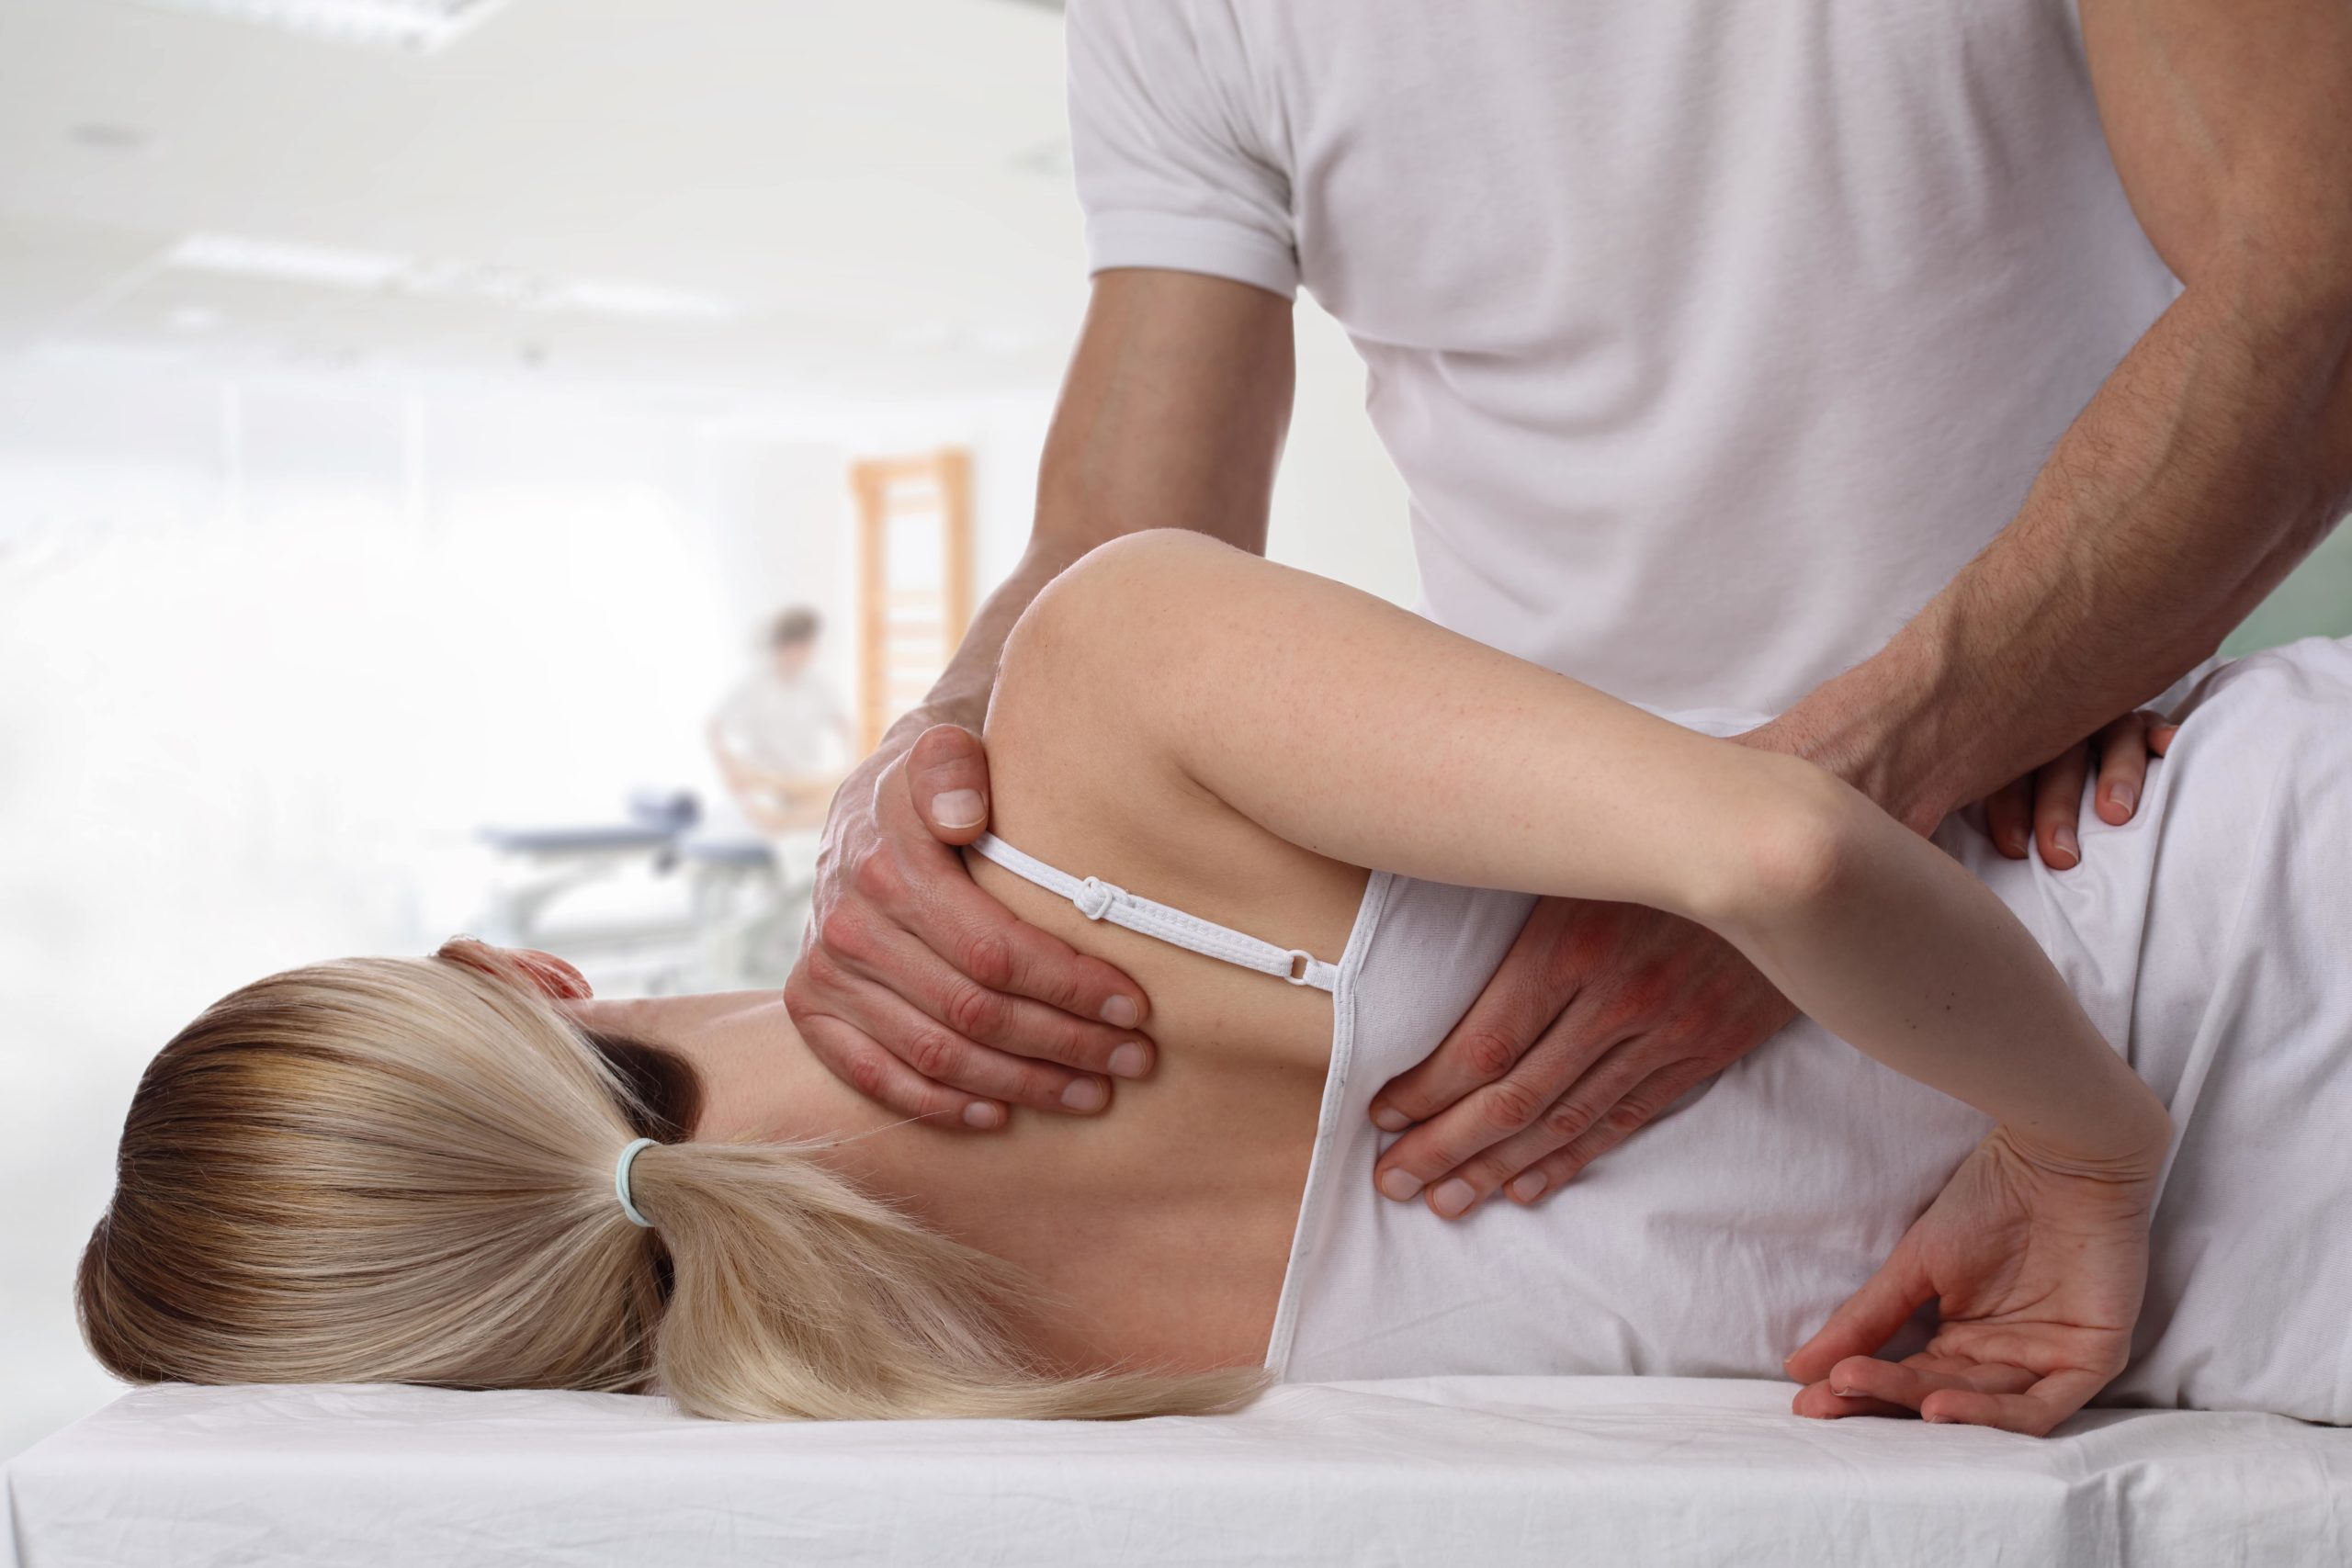 Brother massage. Хиропрактика мануальная терапия. Пир постизометрическая релаксация. Остеопатия остеопрактика. Массаж мануальная терапия.